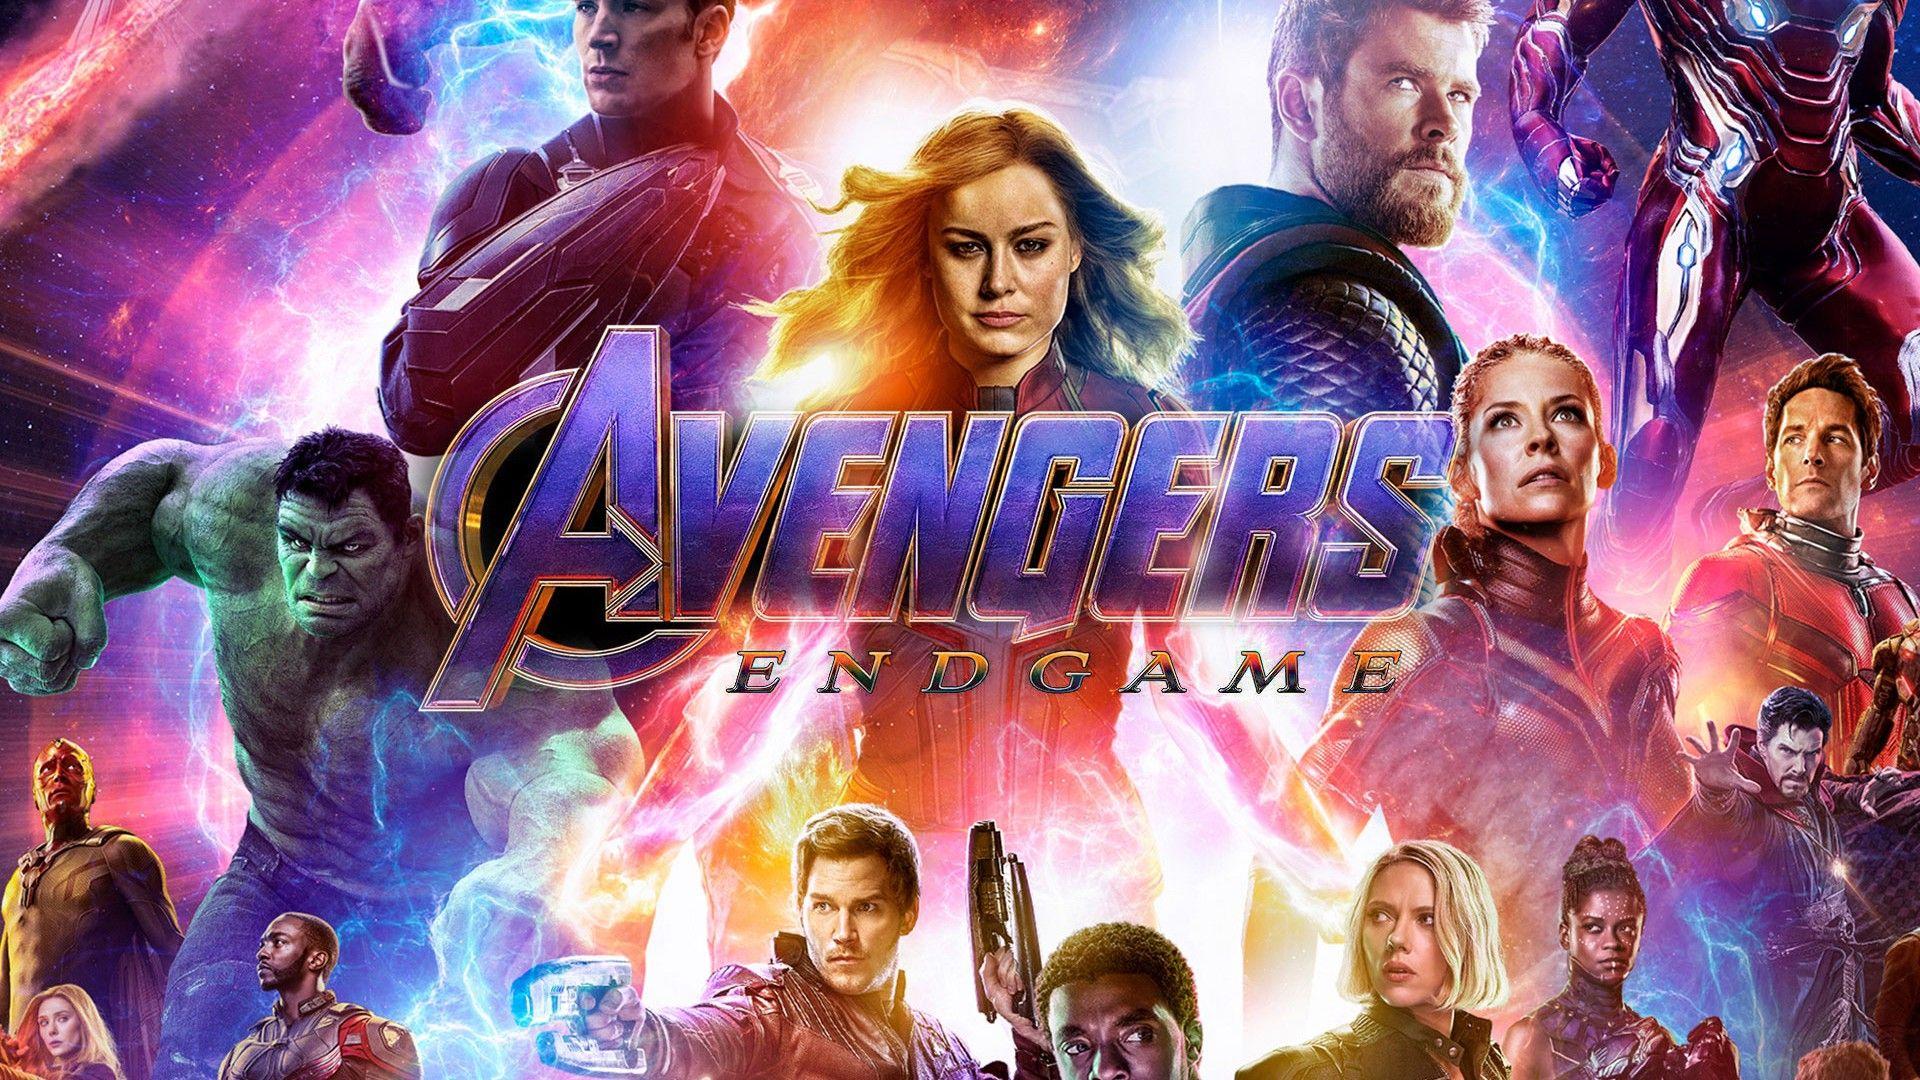 Avengers Endgame 2019 Poster Wallpaper Movie Poster Wallpaper HD. Full movies online free, Movie posters, Avengers